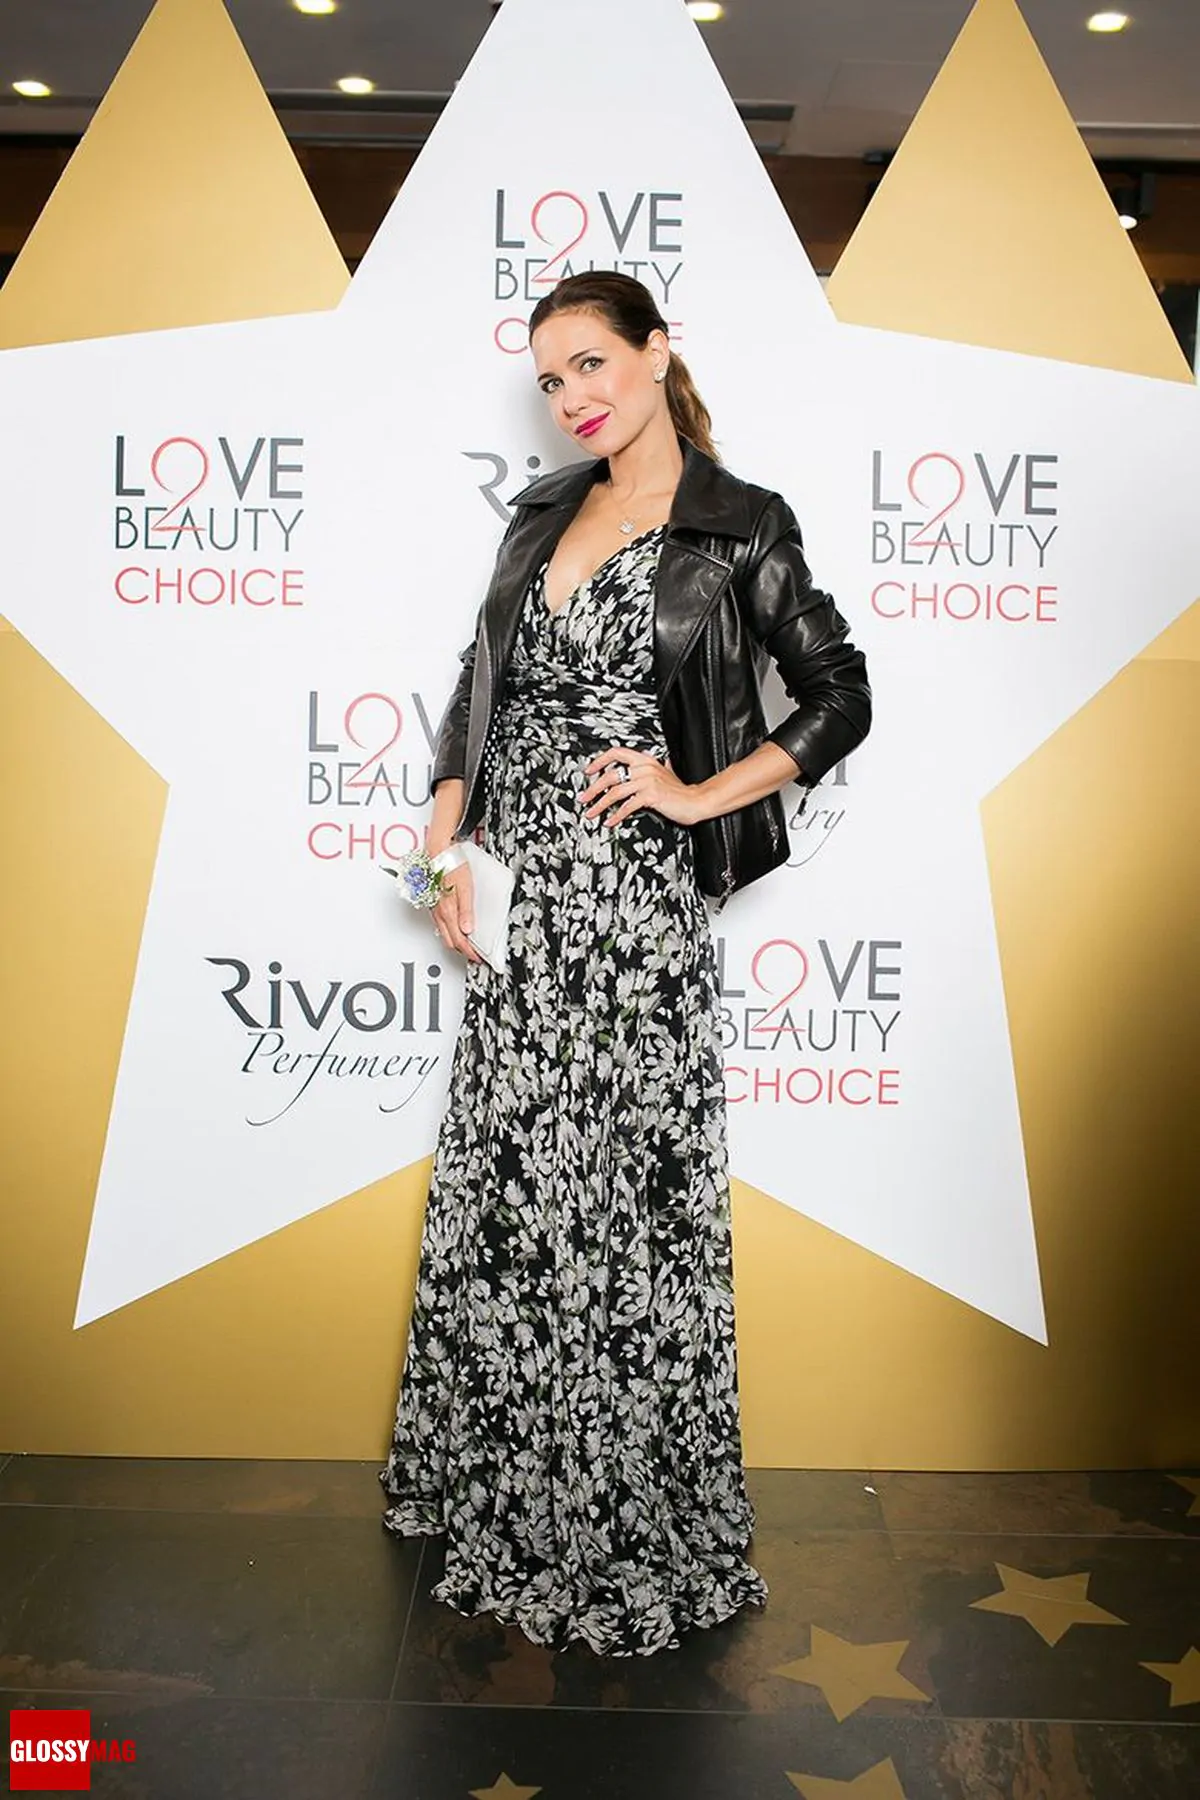 Екатерина Климова на закрытом мероприятии Beauty CHOICE в Rivoli Perfumery в ТГ Модный сезон, 28 июня 2017 г.